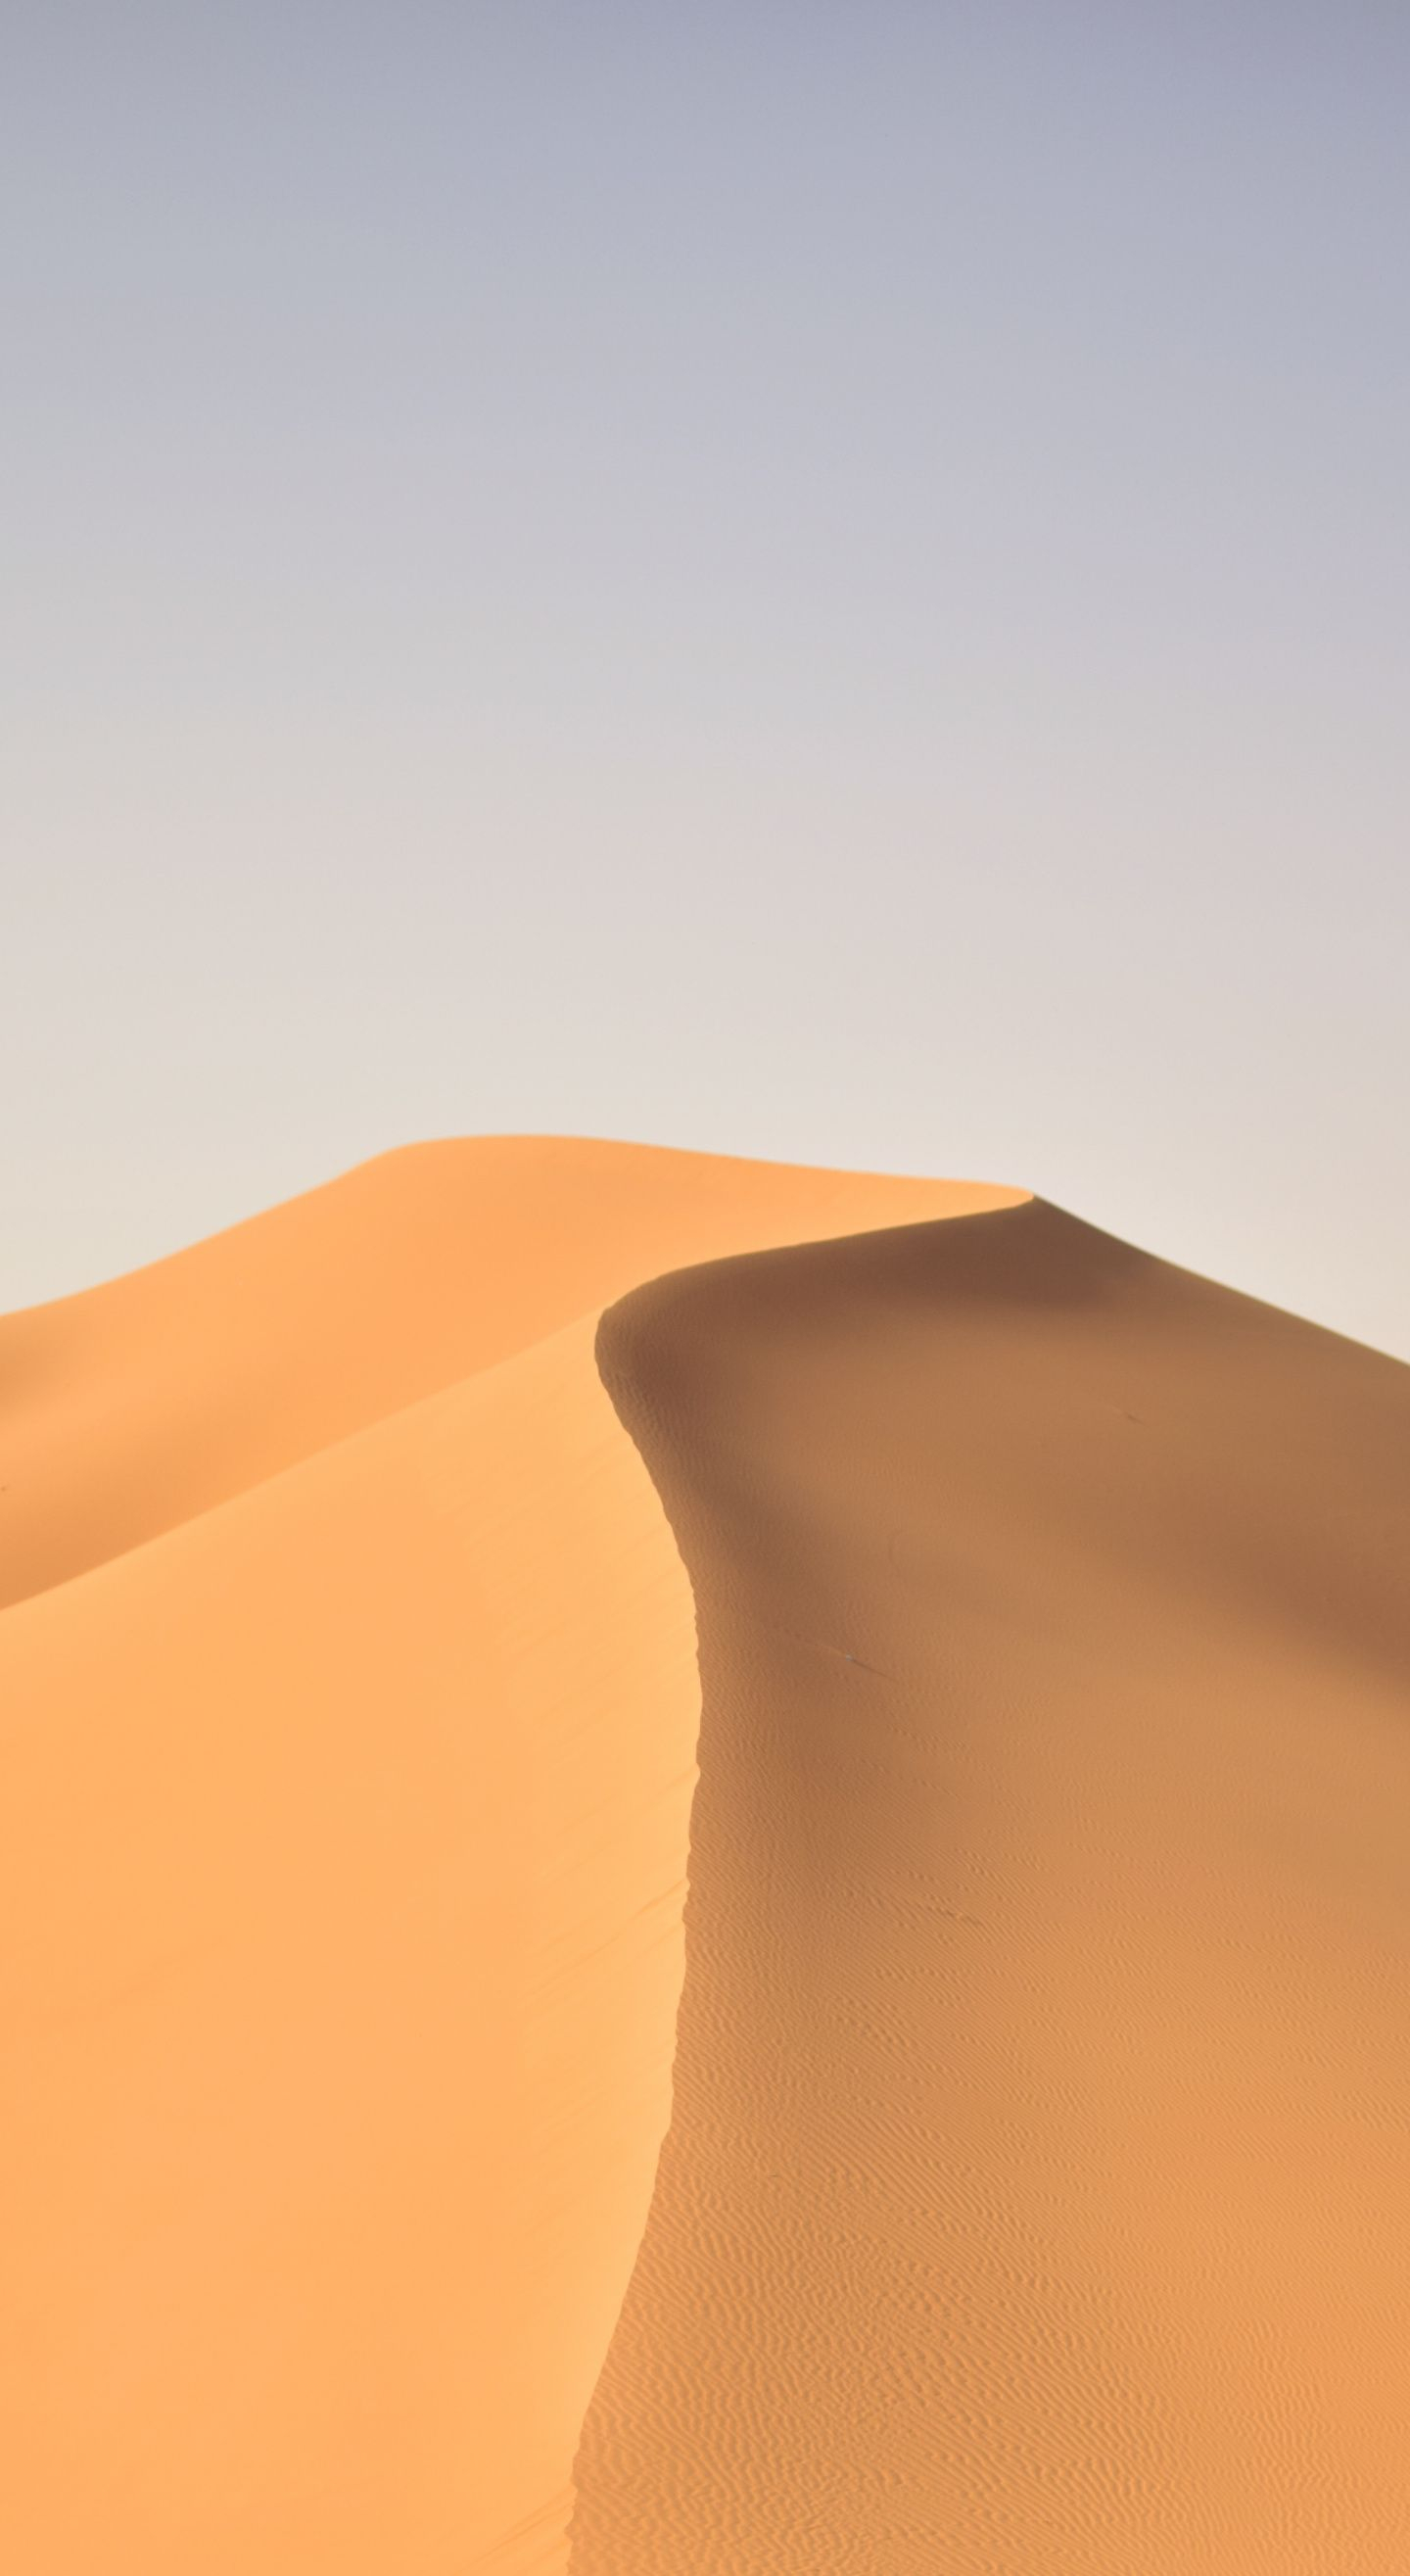 1440x2630 Desert, sand, dunes, landscape wallpaper | Landscape wallpaper, Landscape, Wallpaper